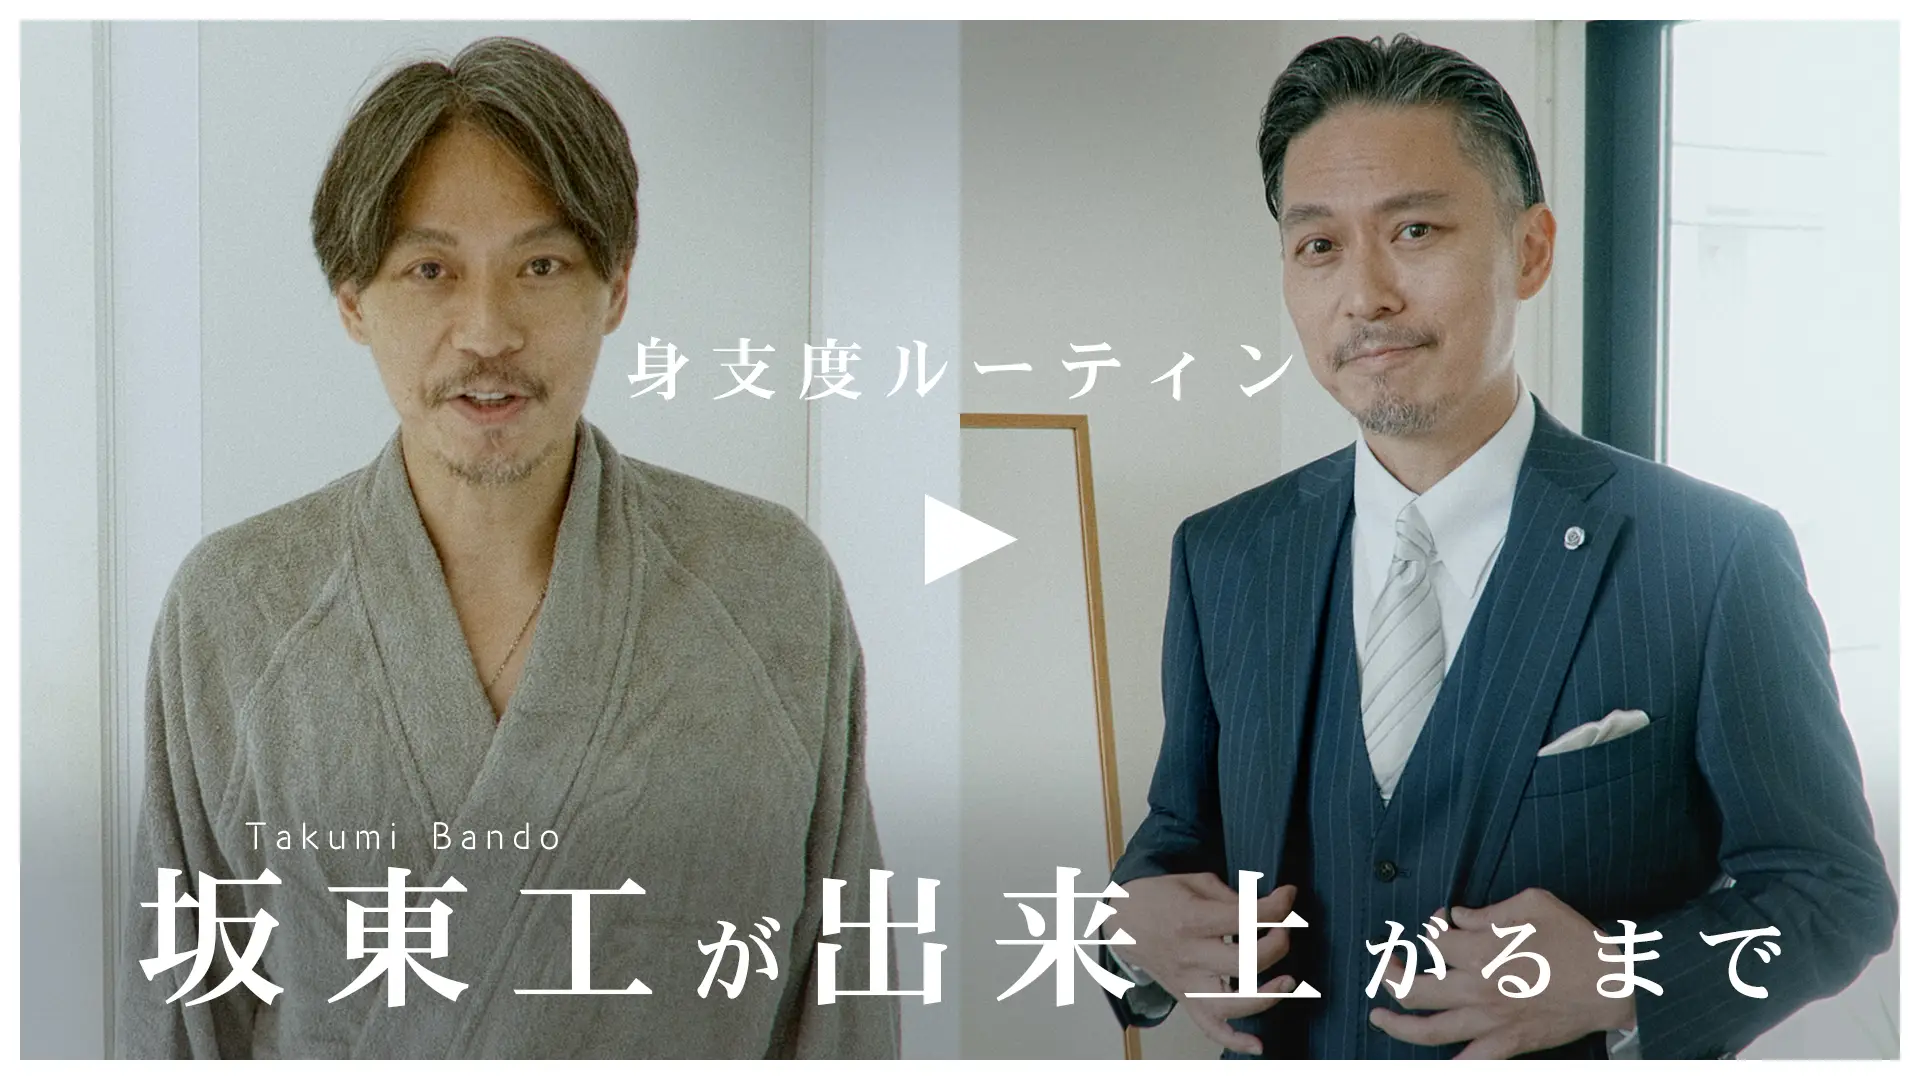 「坂東工は香りとともにオンになる。」こだわりの身支度ルーティーン動画を『TIMELINE クラウドファンディング』で公開